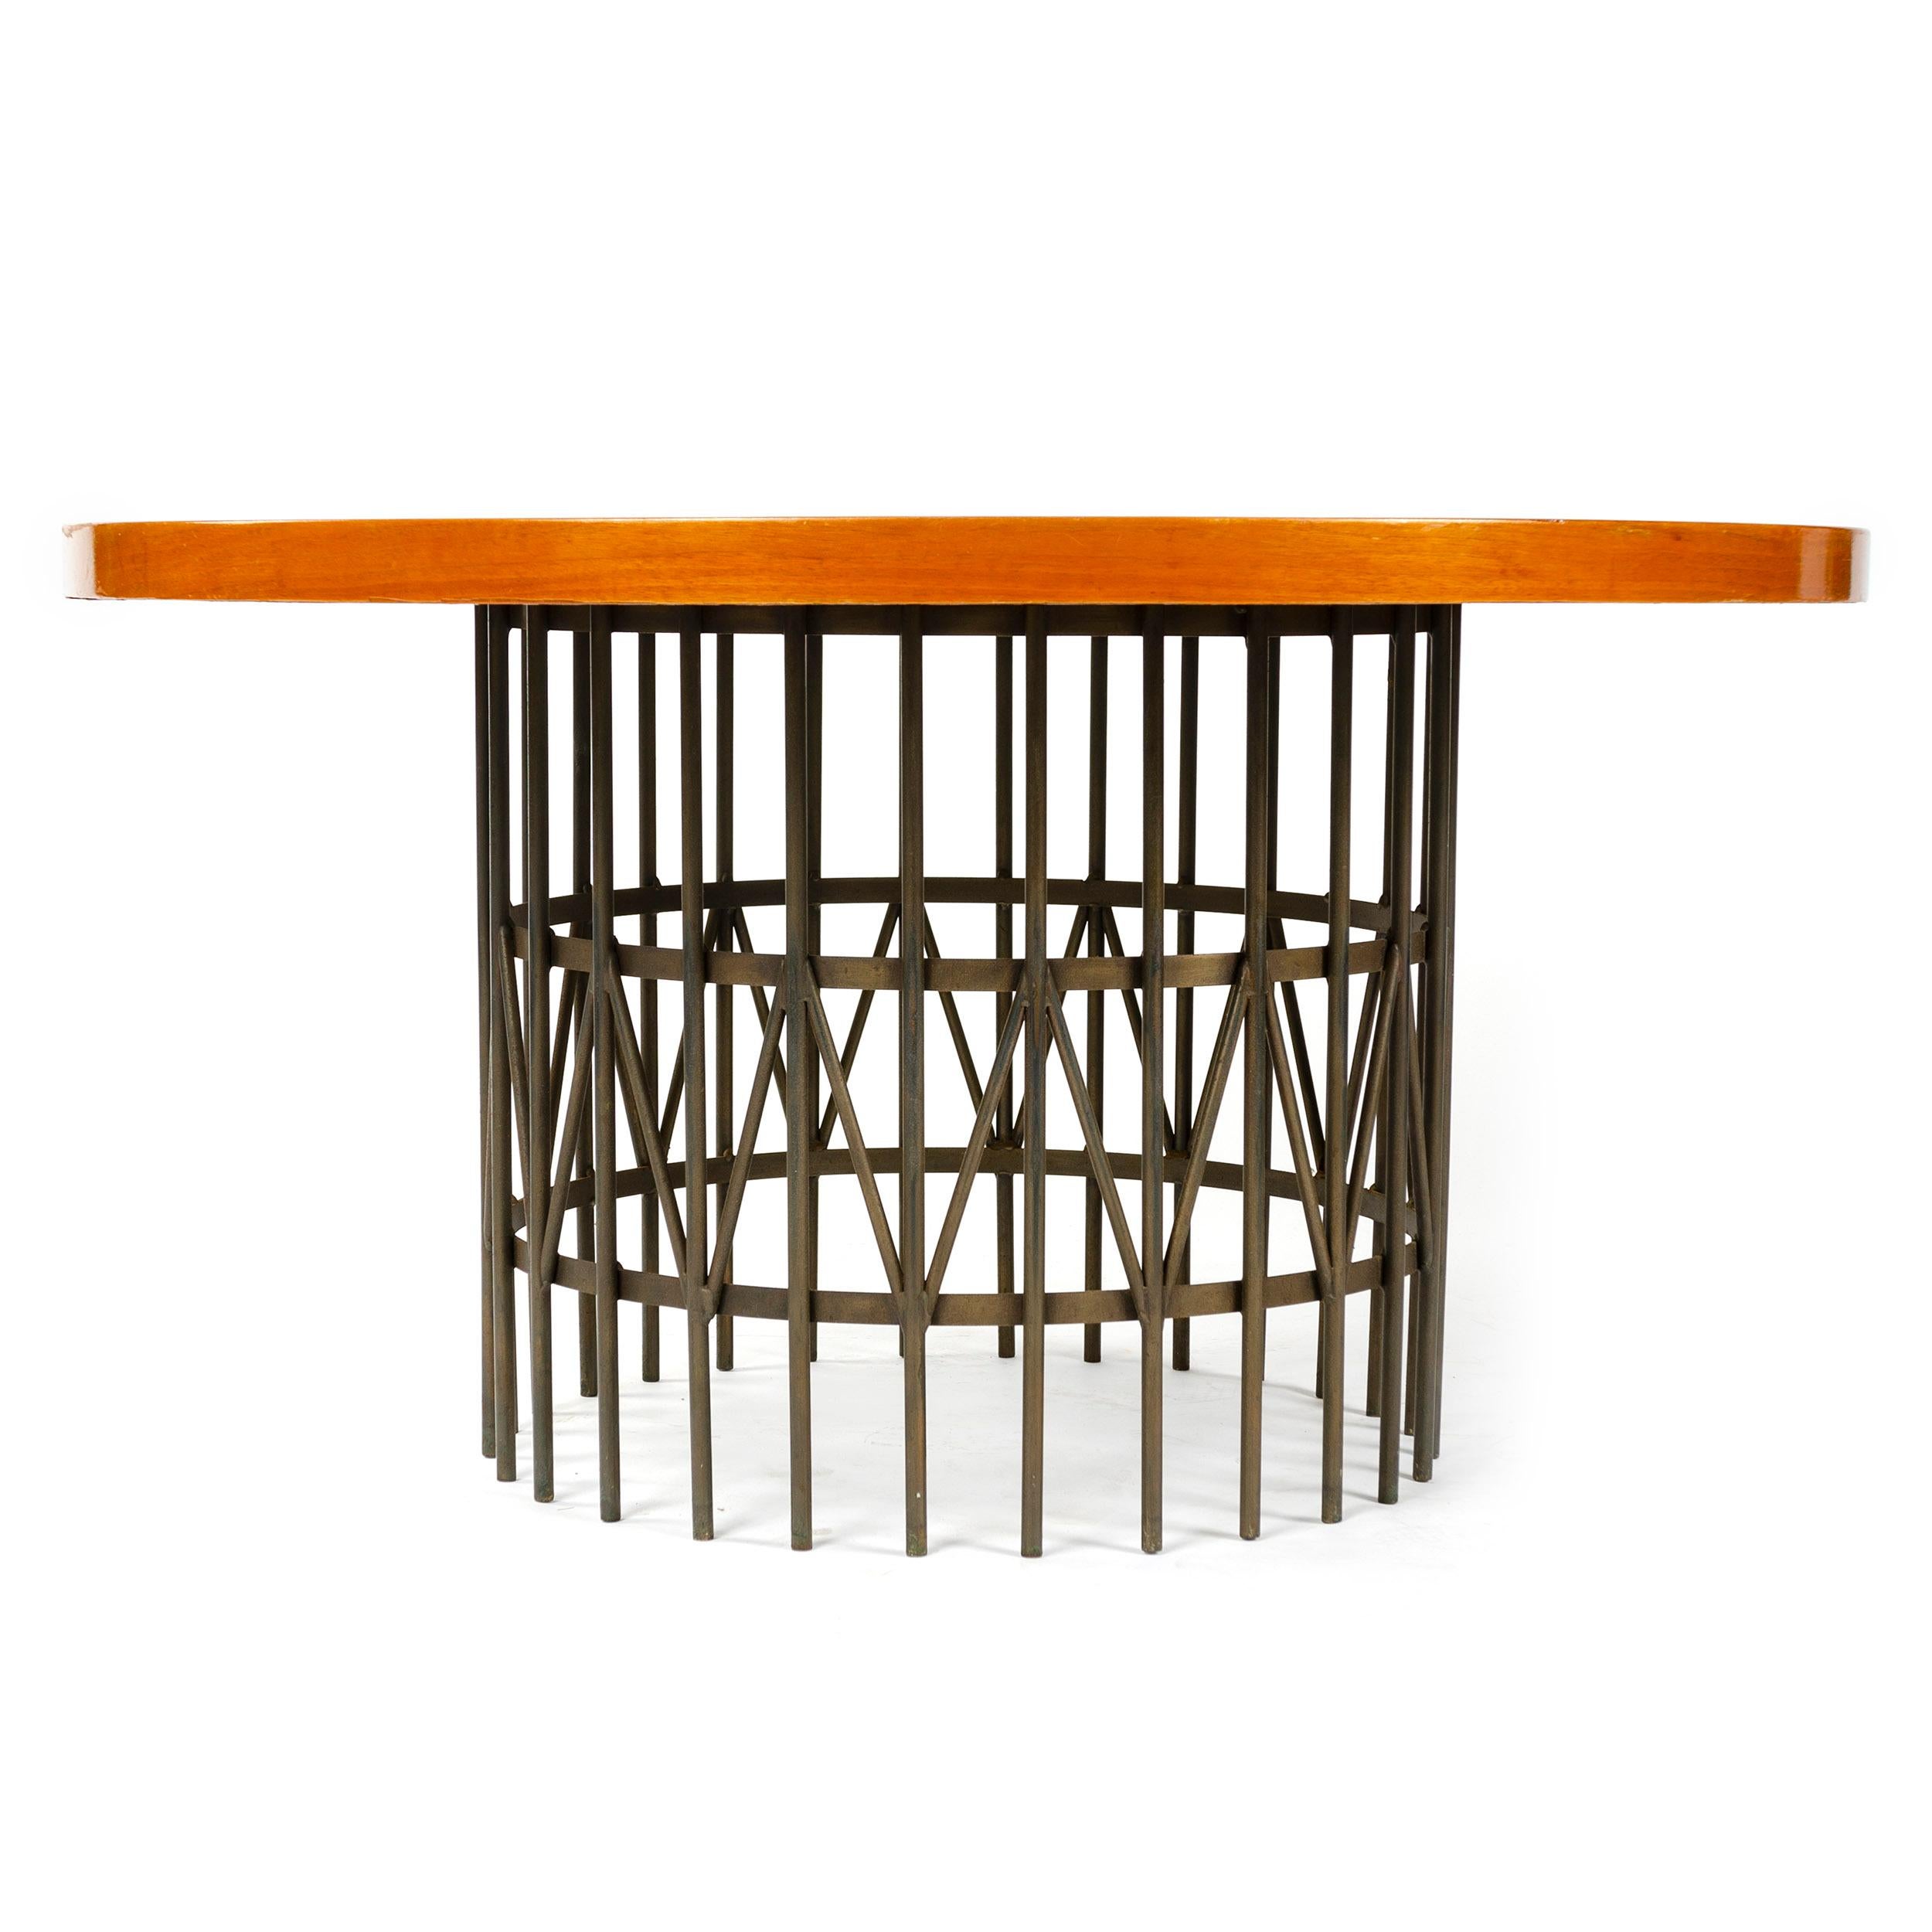 Table basse ronde / table de cocktail de style Milo Baughman, en placage de bois massif et base circulaire en acier bronzé. Fabriqué par Thayer-Coggin aux États-Unis dans les années 1960.